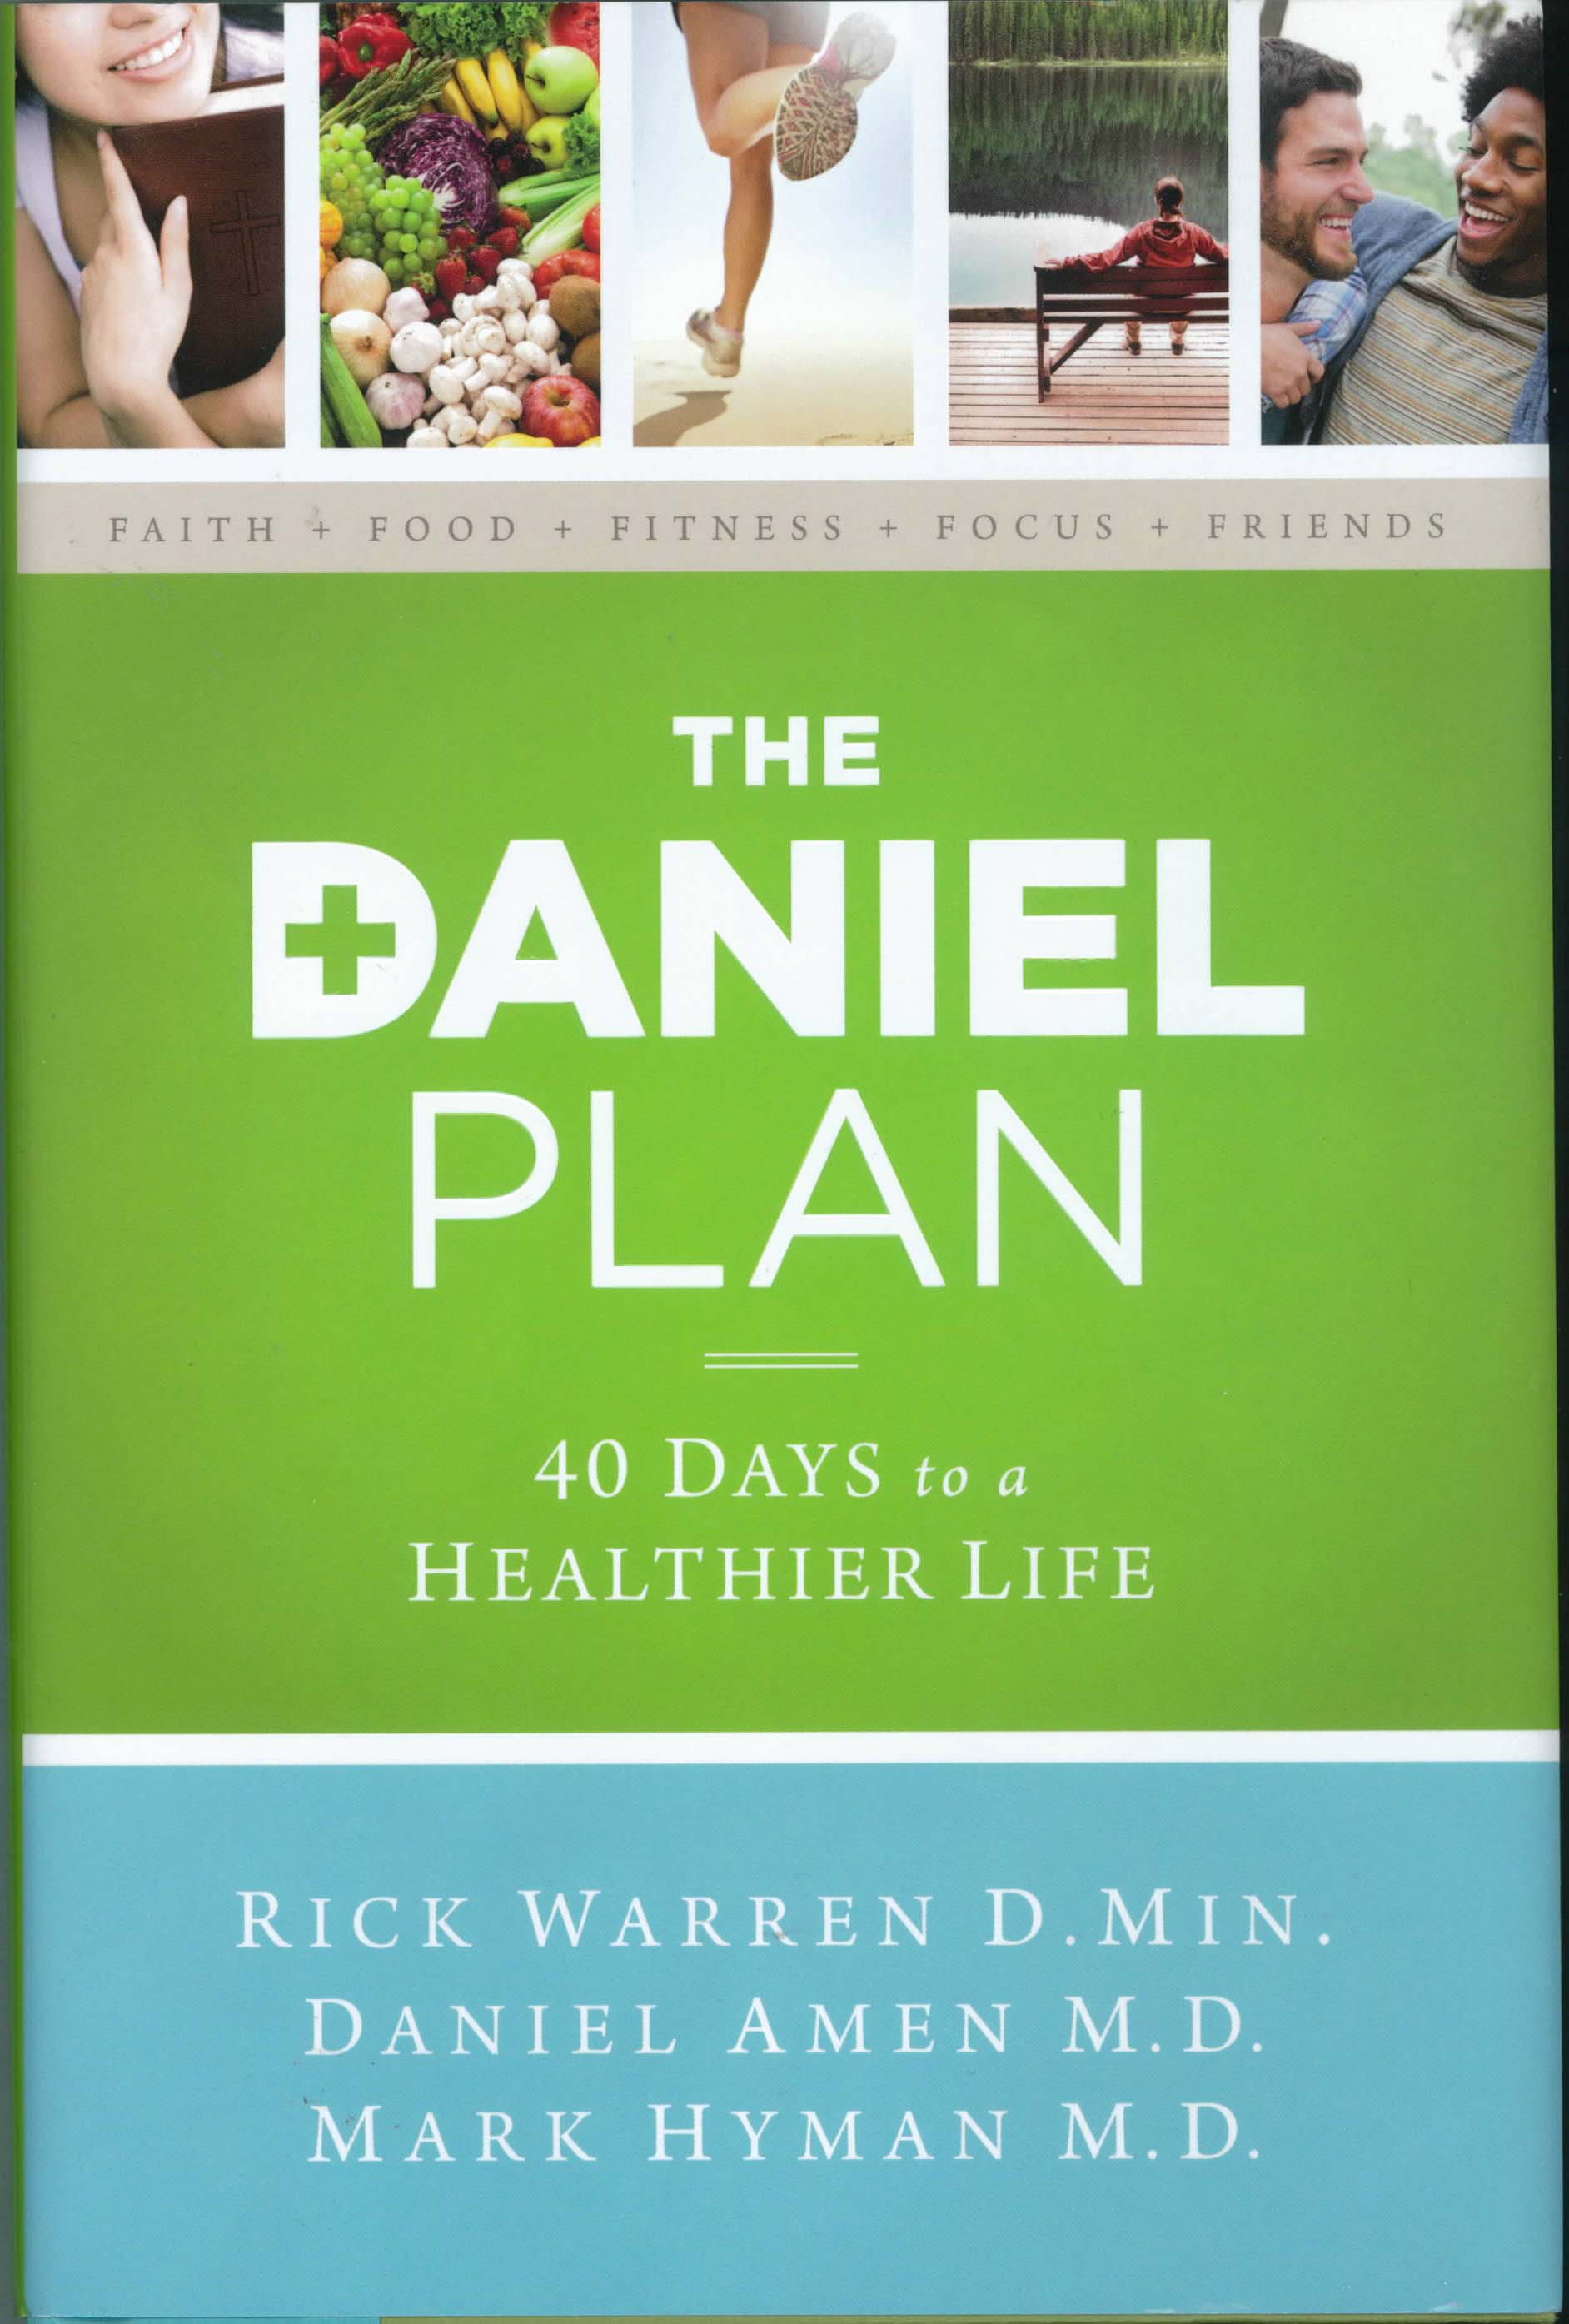 The Daniel Plan by Rick Warren 108-9780310344292